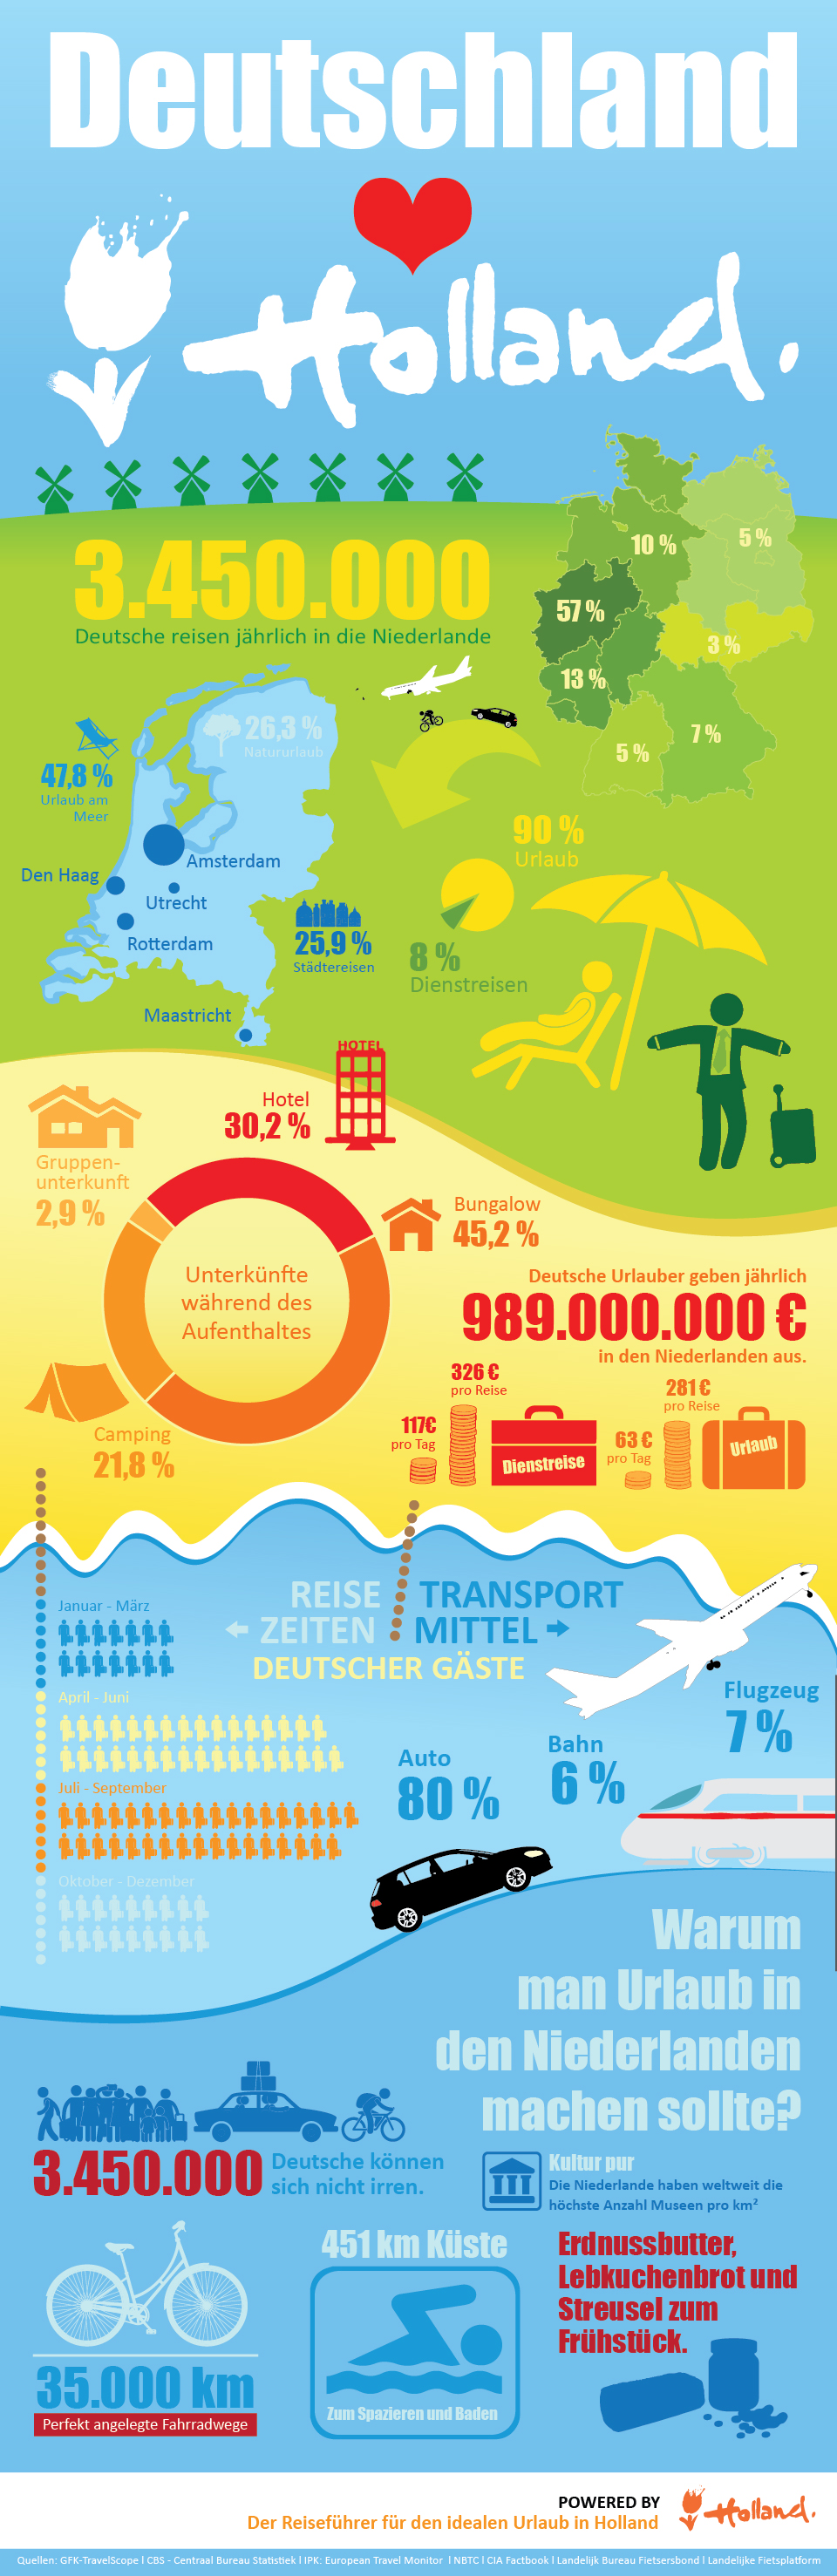 Holland.com_Infografik